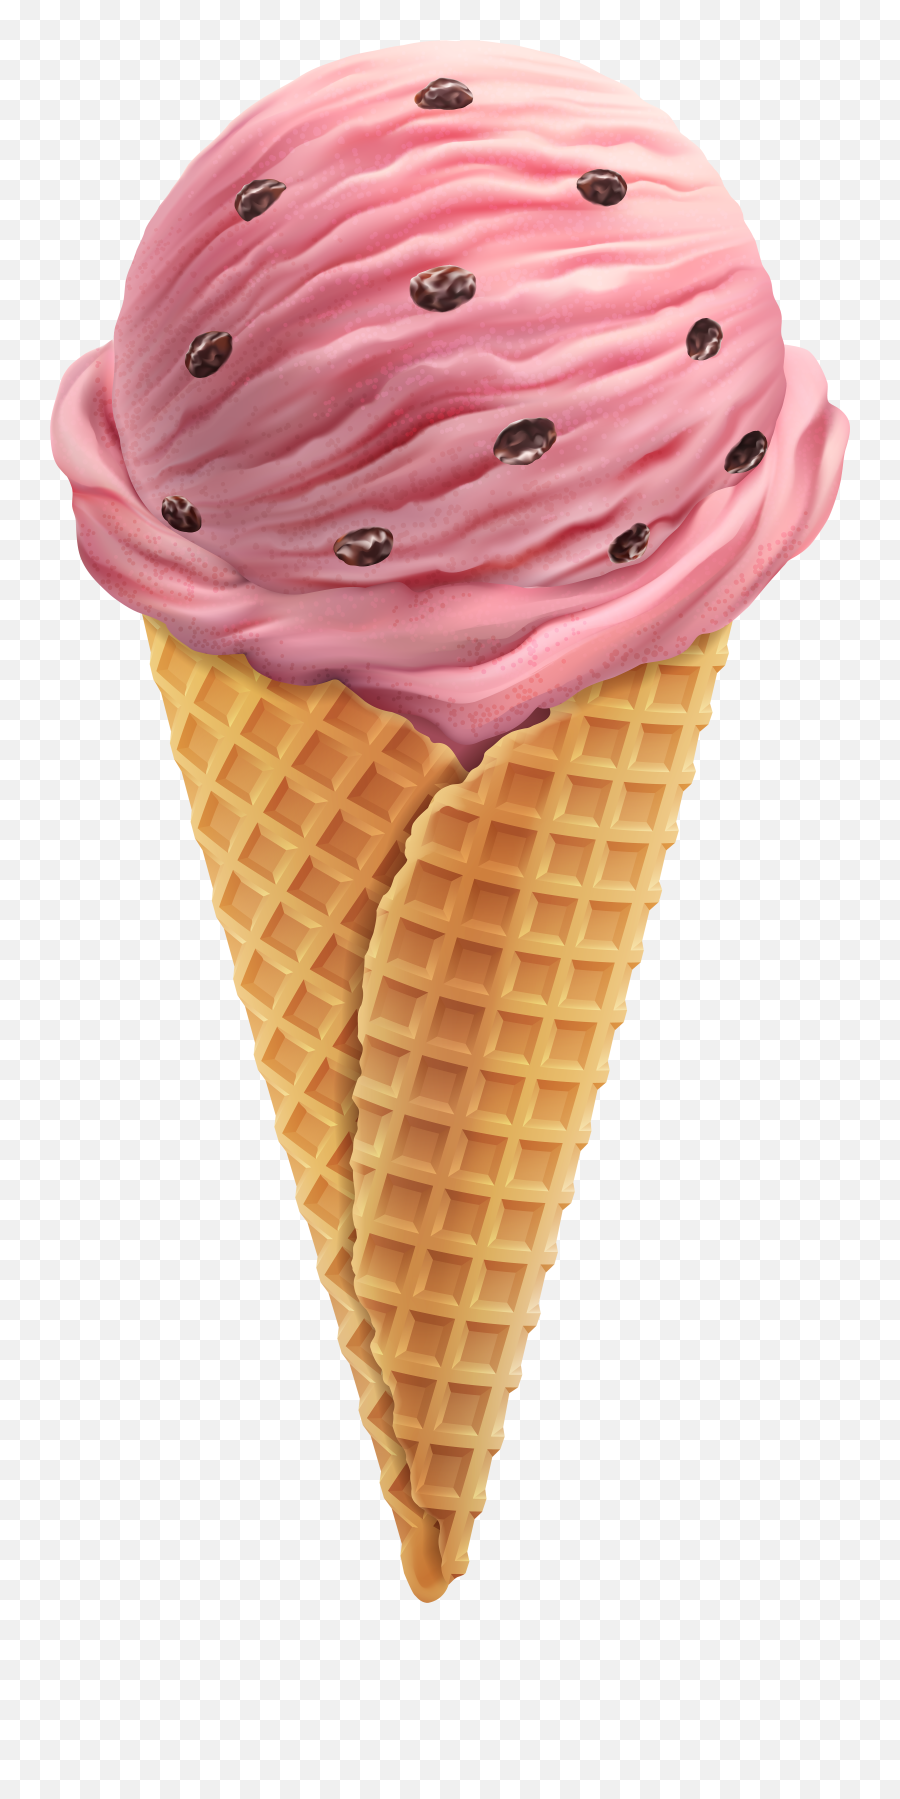 10 Popsicles Illustration Ideas - Ice Cream Cone Transparent Background Emoji,Ice Cream Cone Emoji